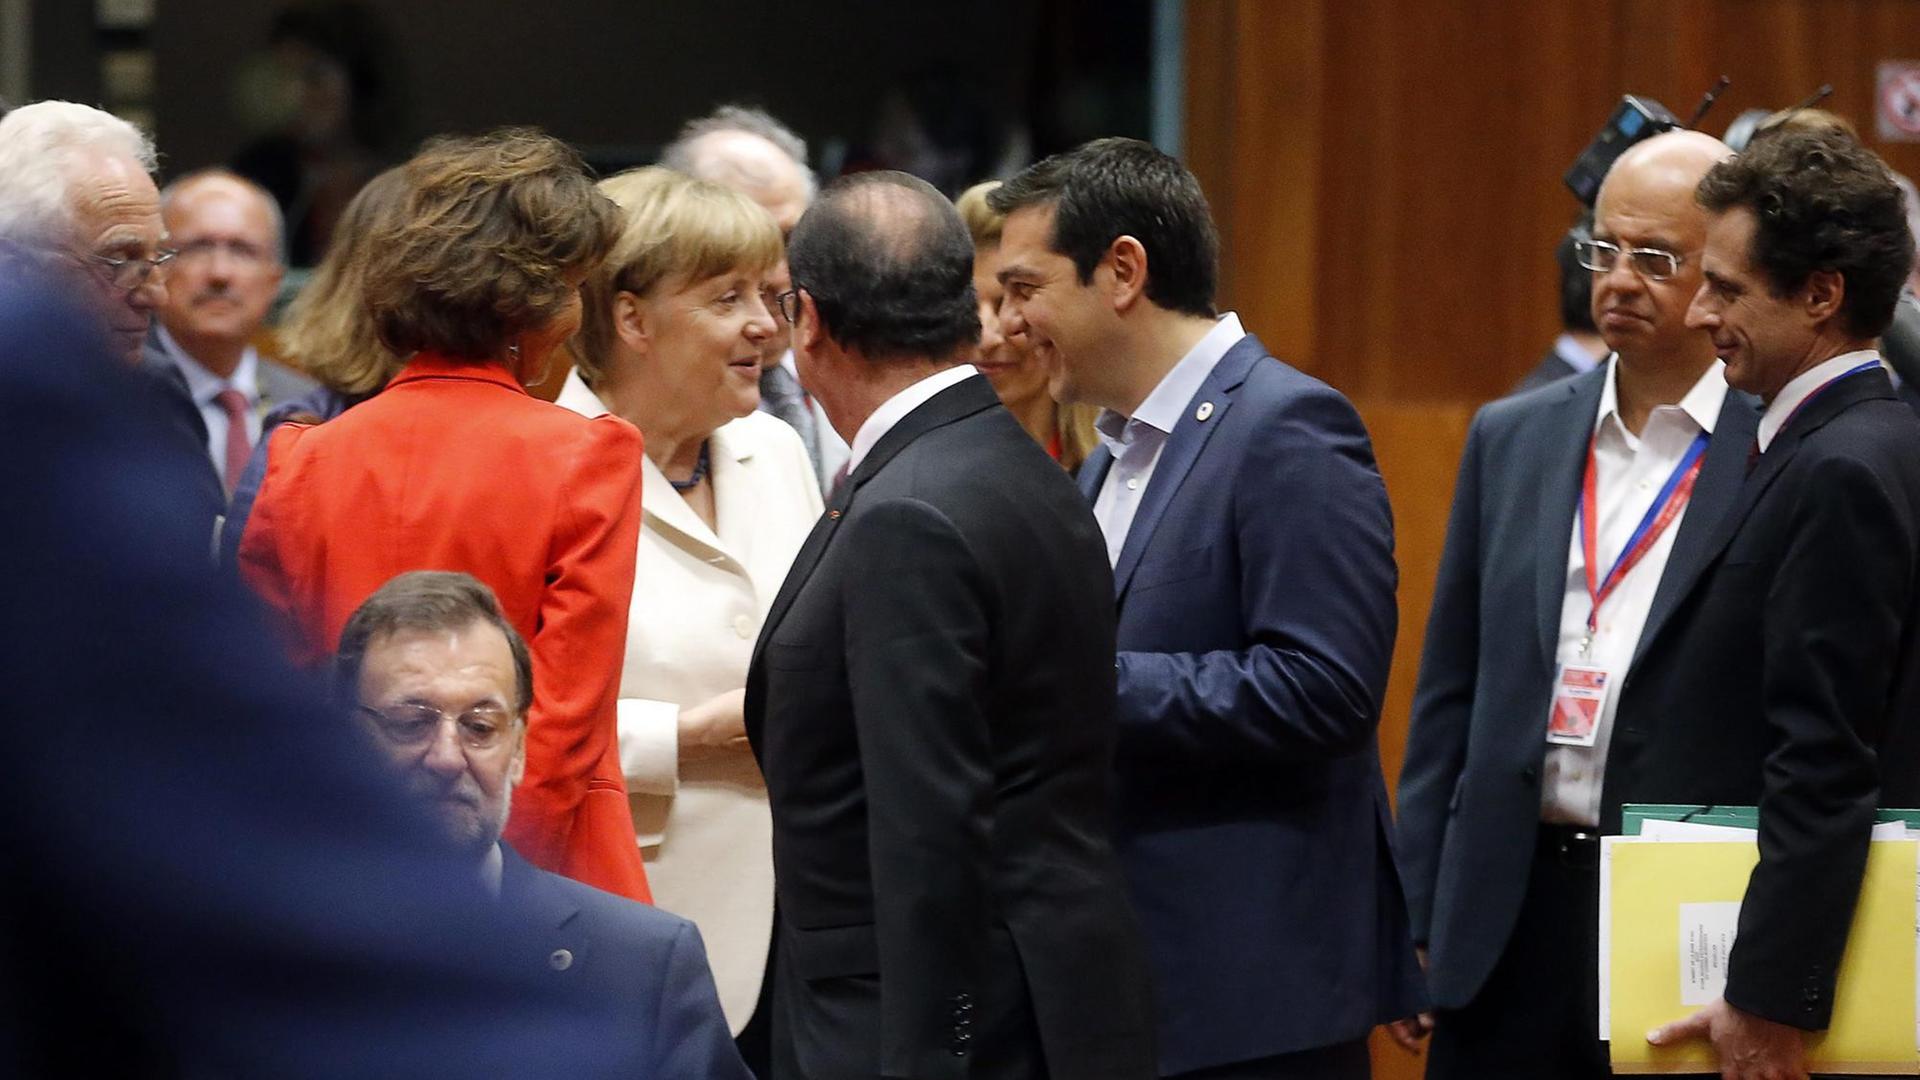 Der griechische Ministerpräsident Alexis Tsipras spricht mit Bundeskanzlerin Angela Merkel und Frankreichs Präsident Francois Hollande auf dem Sondergipfel der Europartner zur Griechenland-Krise.